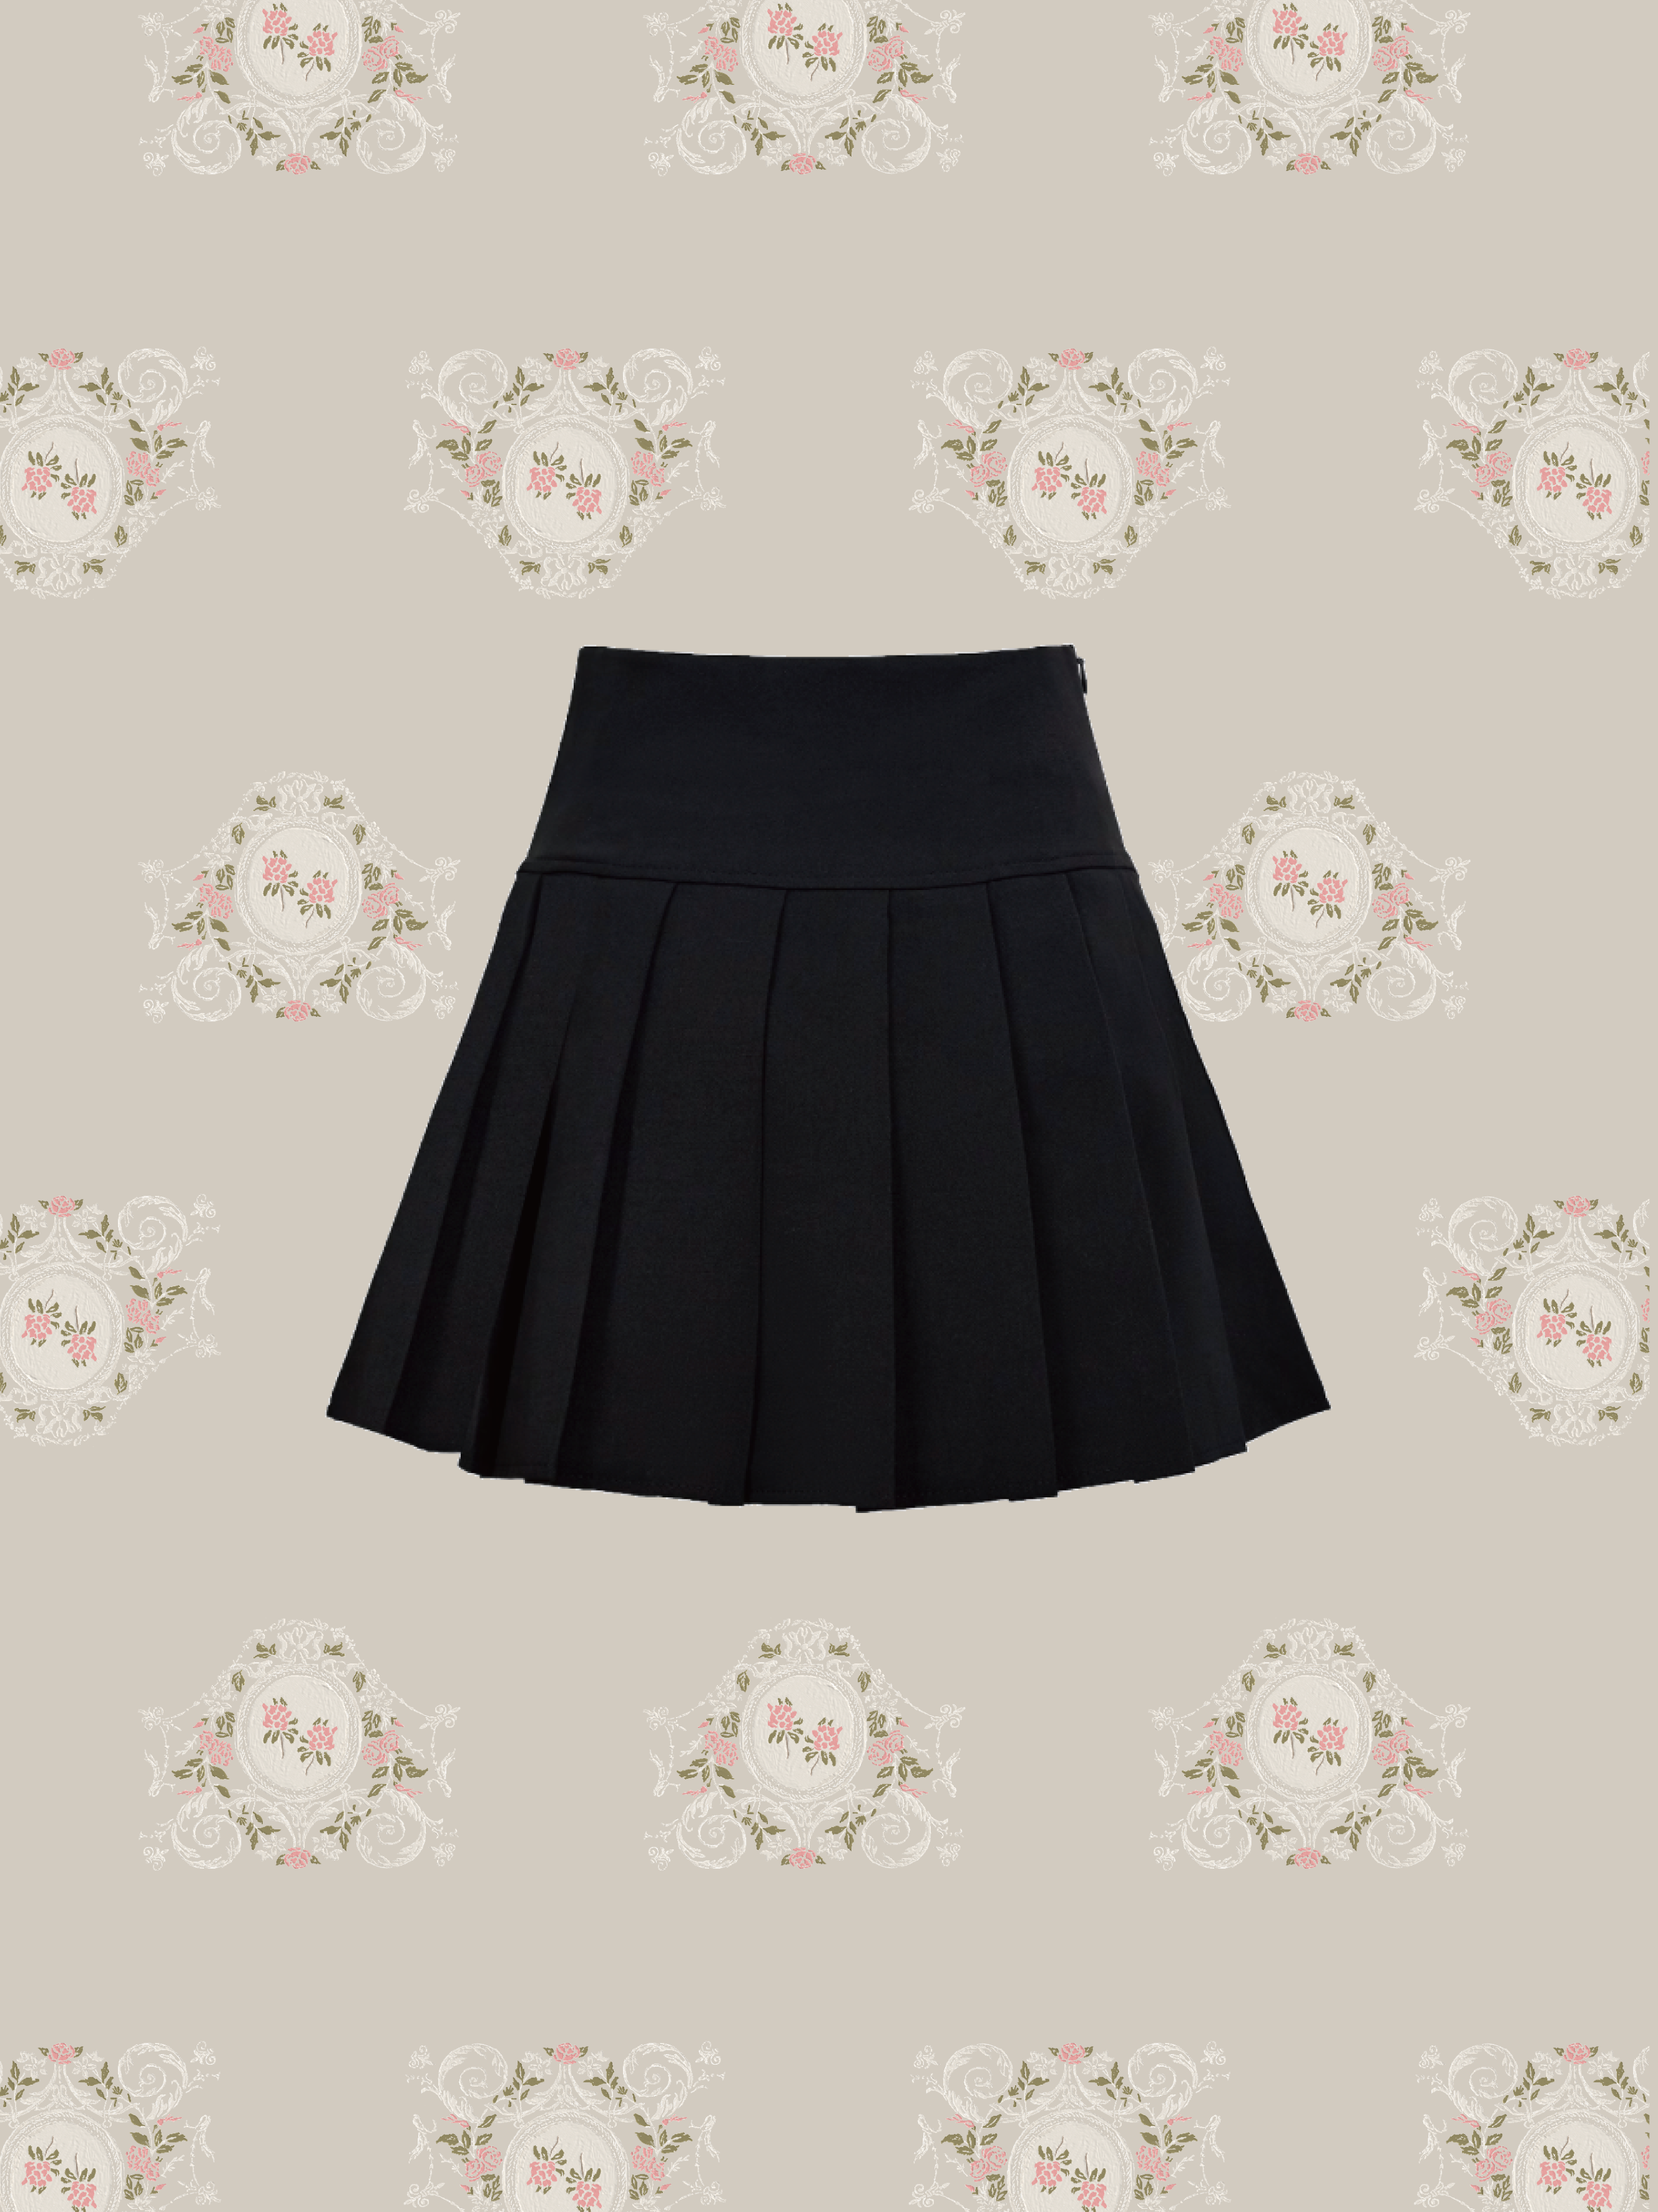 Studed Pleats Skirt/スタッズプリーツスカート